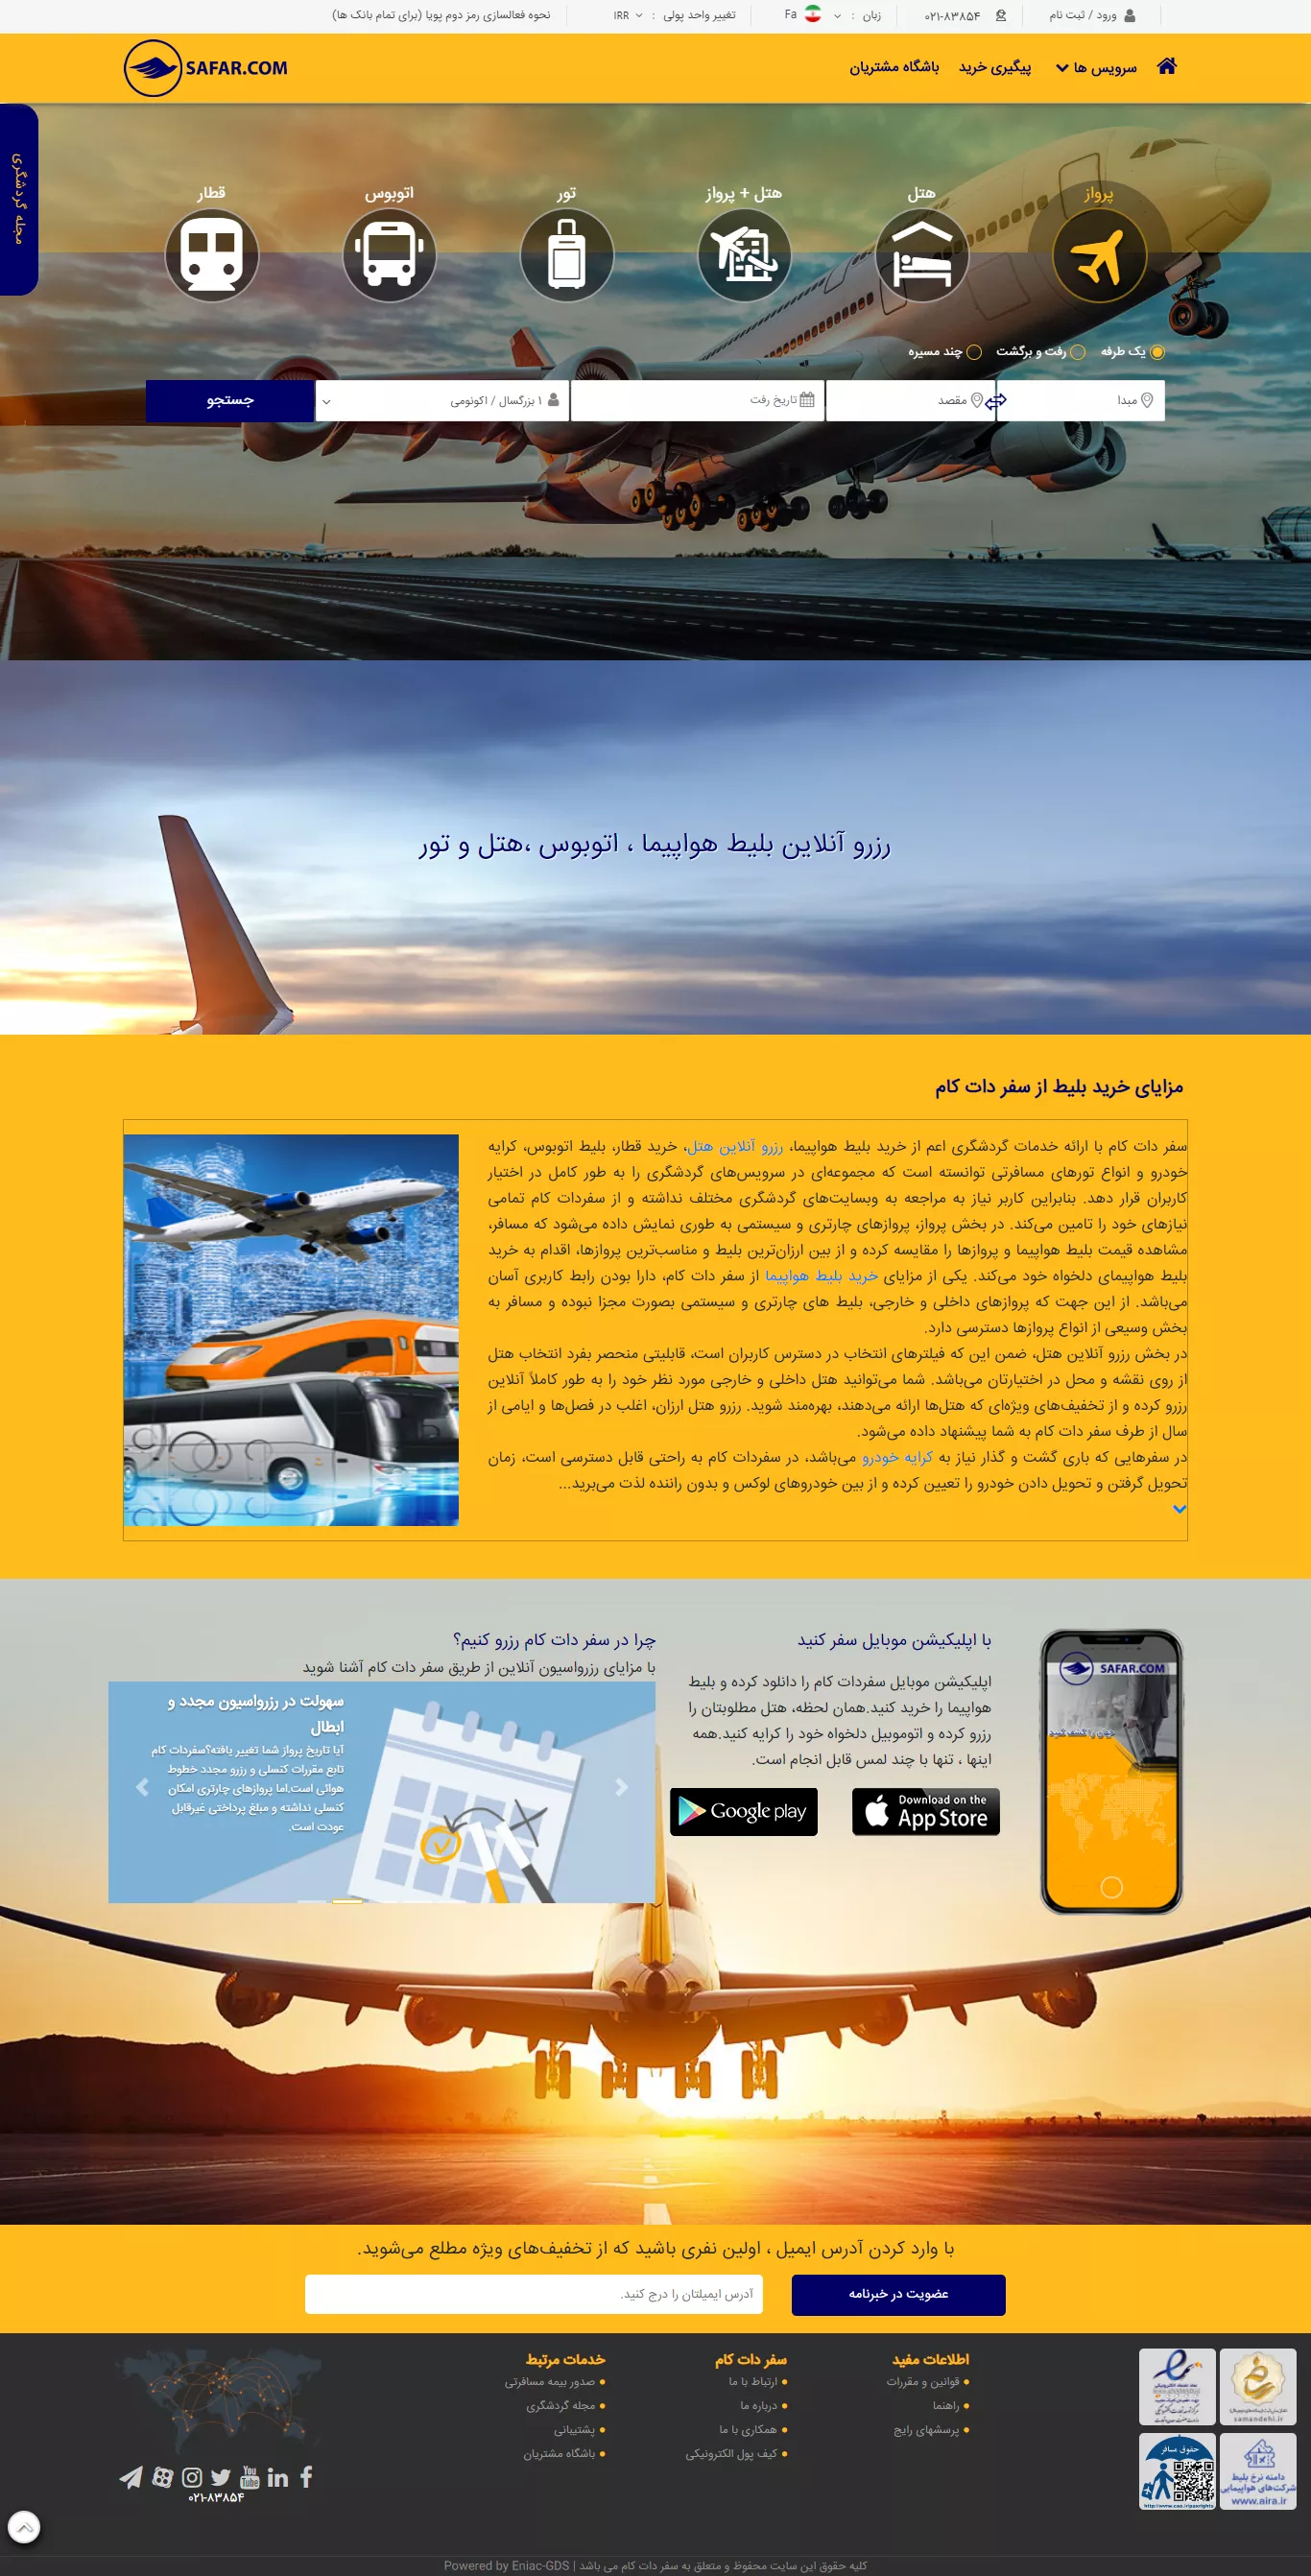 Safar.com - New Homepage Design